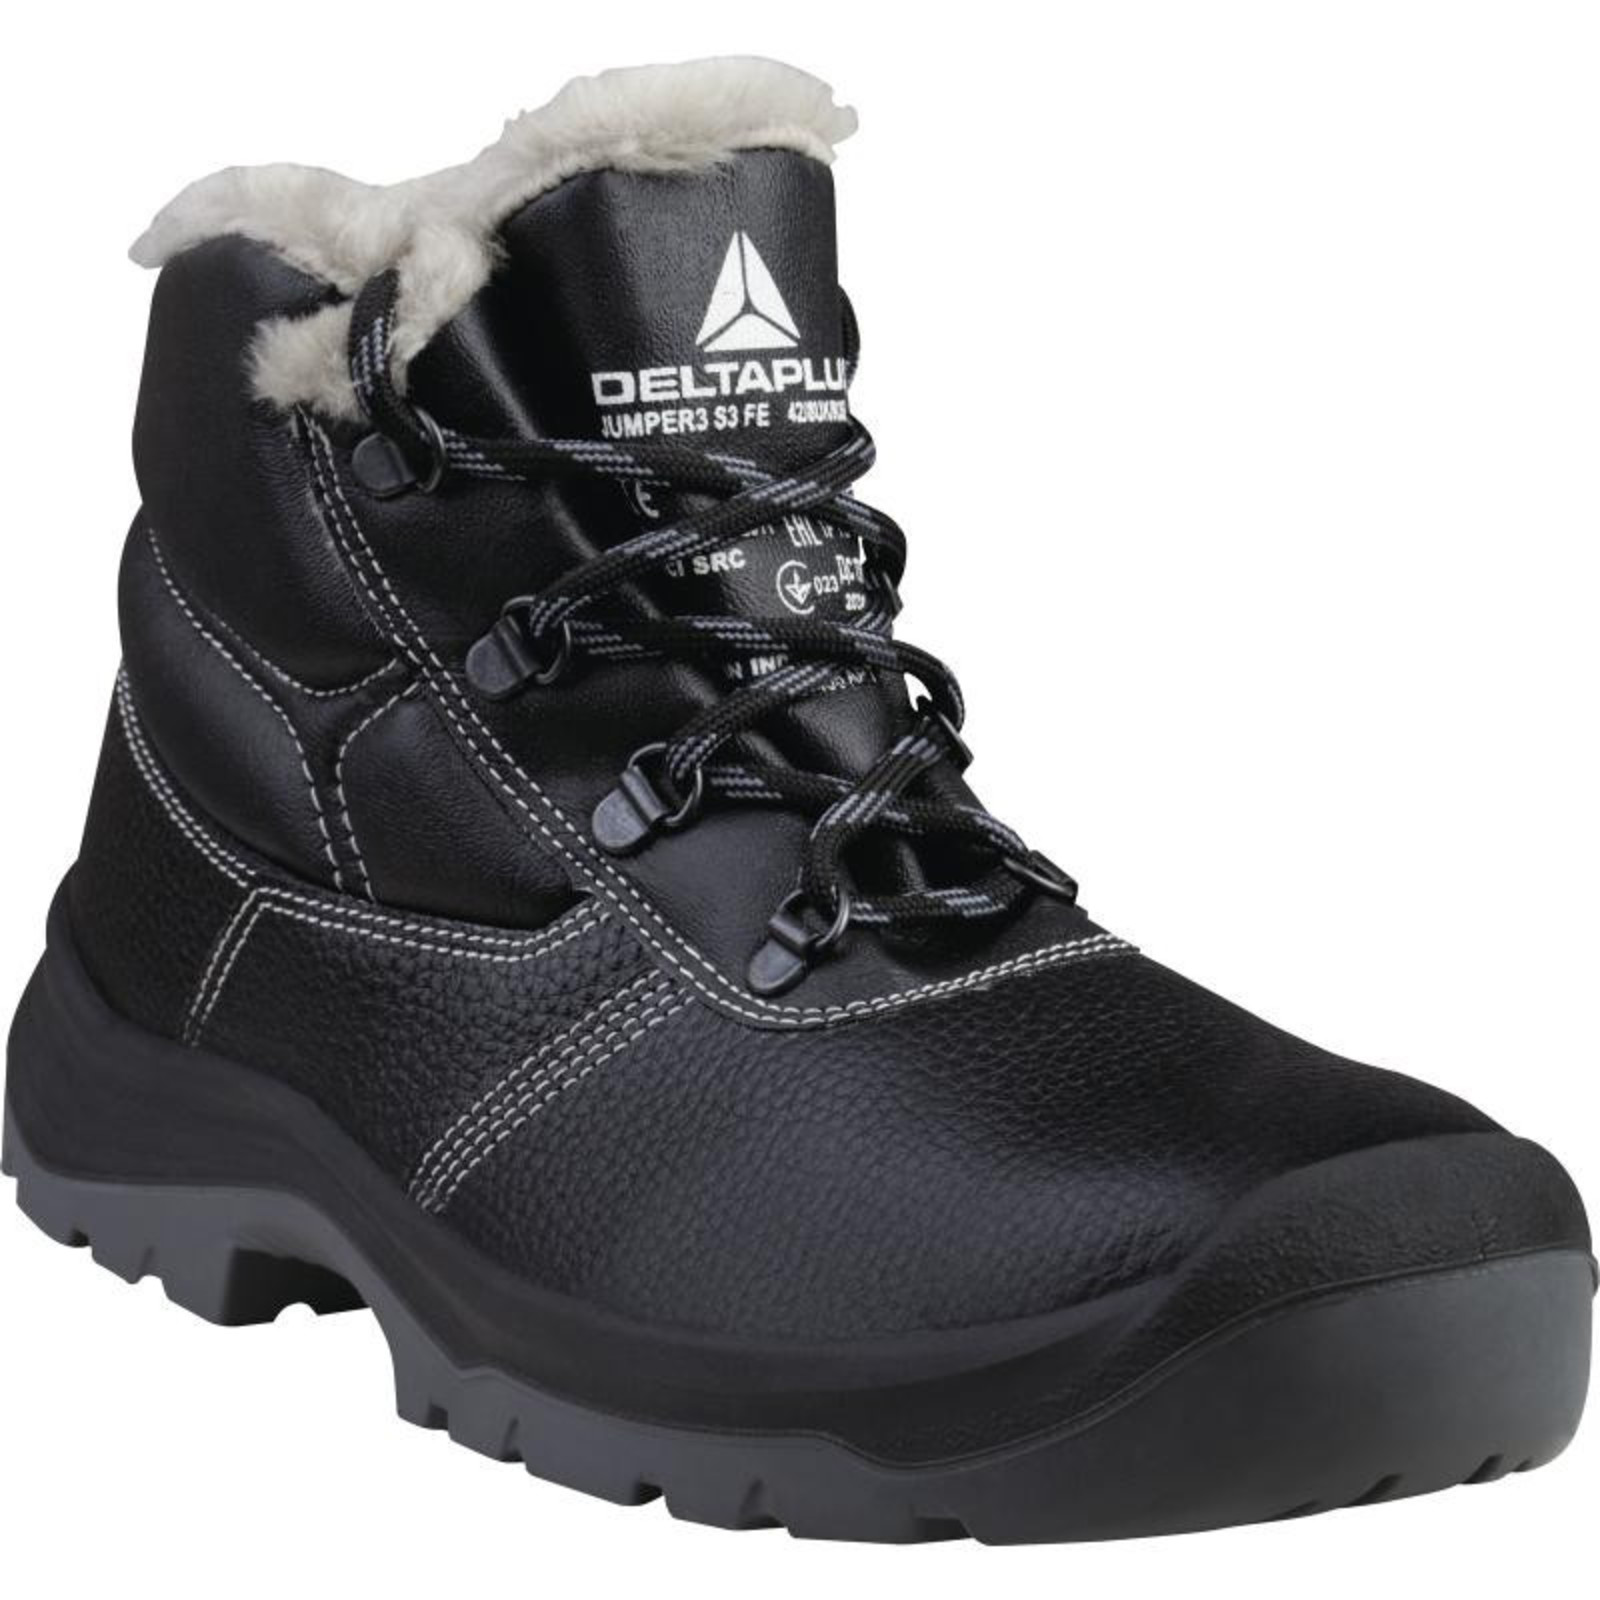 Zimná členková bezpečnostná obuv Delta Plus Jumper3 S3 - veľkosť: 37, farba: čierna